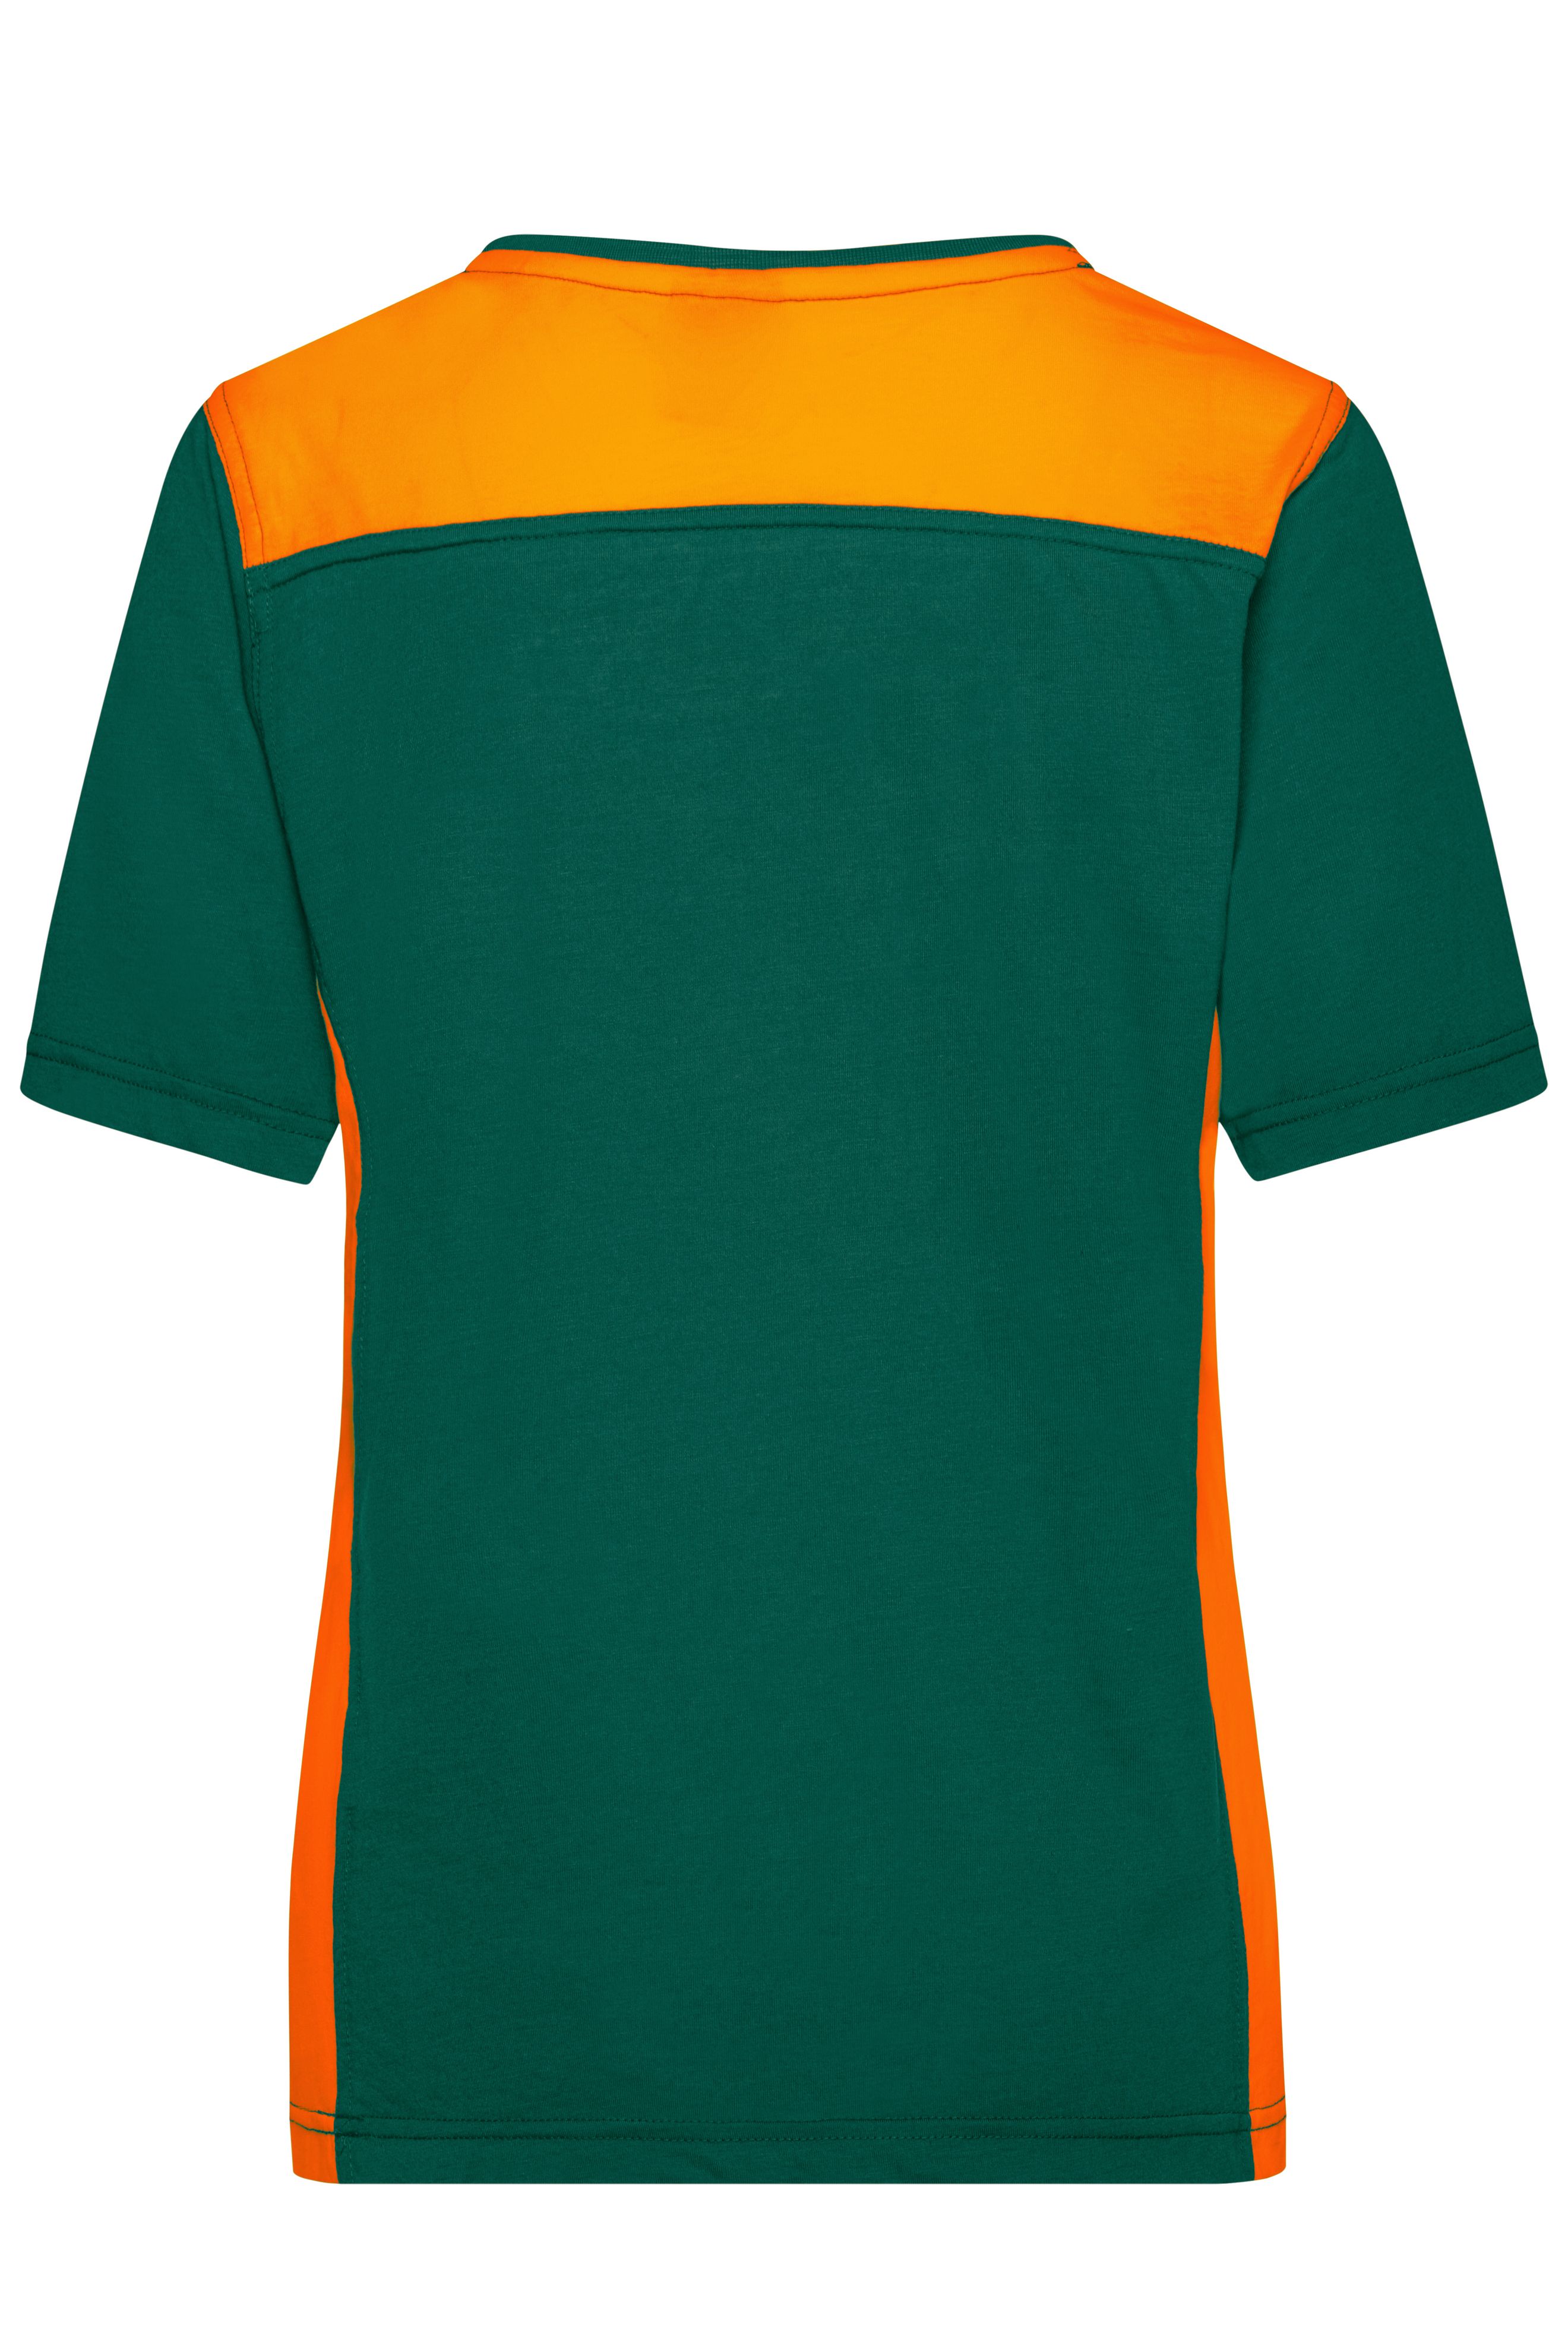 Ladies' Workwear T-Shirt - COLOR - JN859 Strapazierfähiges und pflegeleichtes T-Shirt mit Kontrasteinsätzen